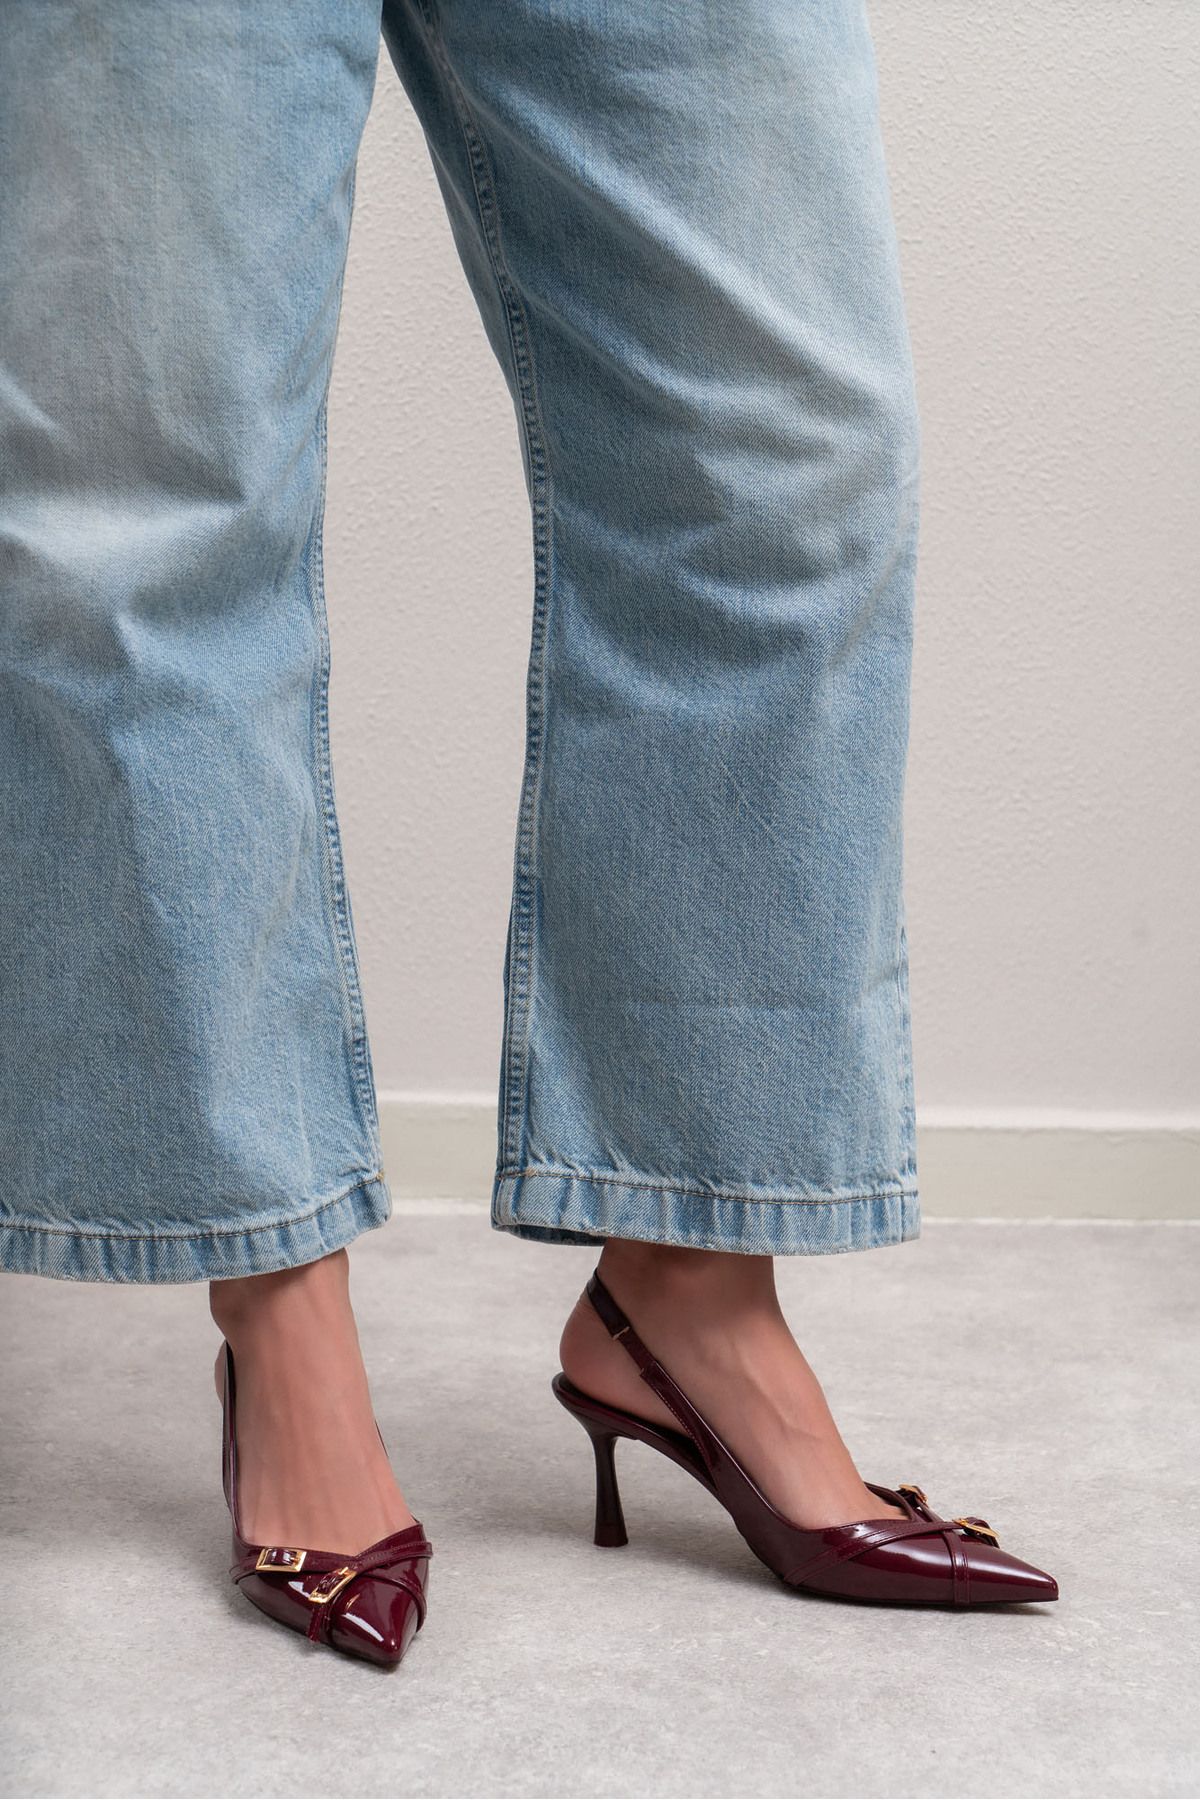 NİŞANTAŞI SHOES Platte Bordo Rugan Kemer Detay Bilek Bağlı Kadın Topuklu Ayakkabı